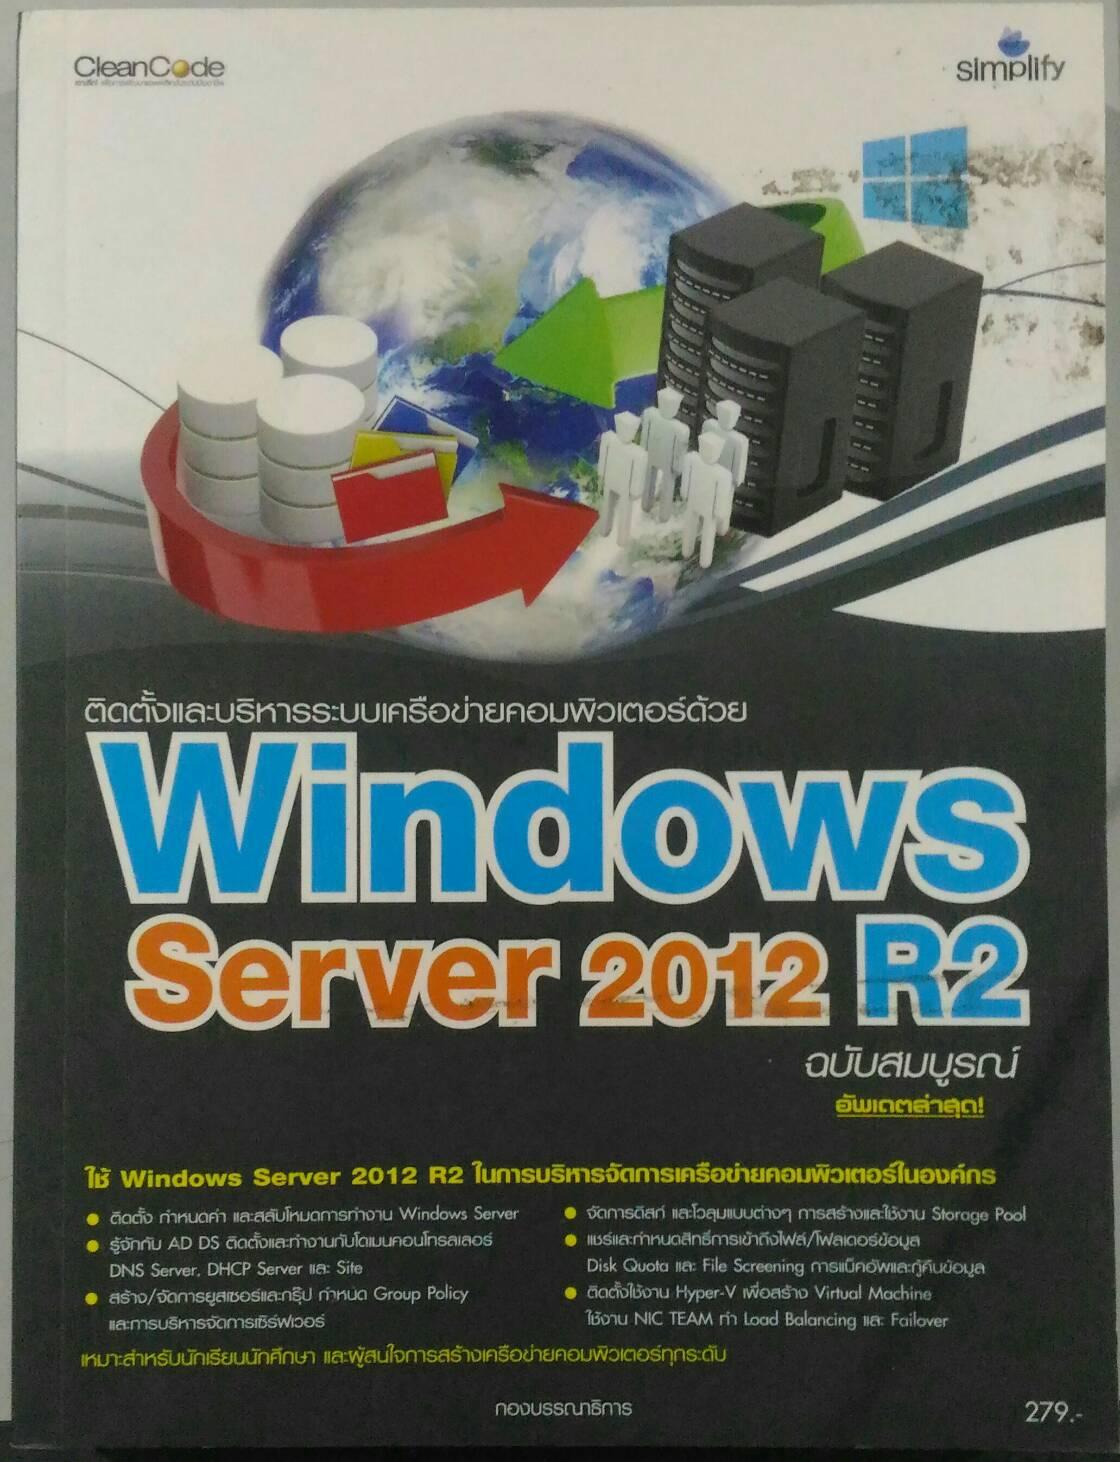 ติดตั้งและบริหารระบบเครือข่ายคอมพิวเตอร์ด้วย Windows Server 2012 R2